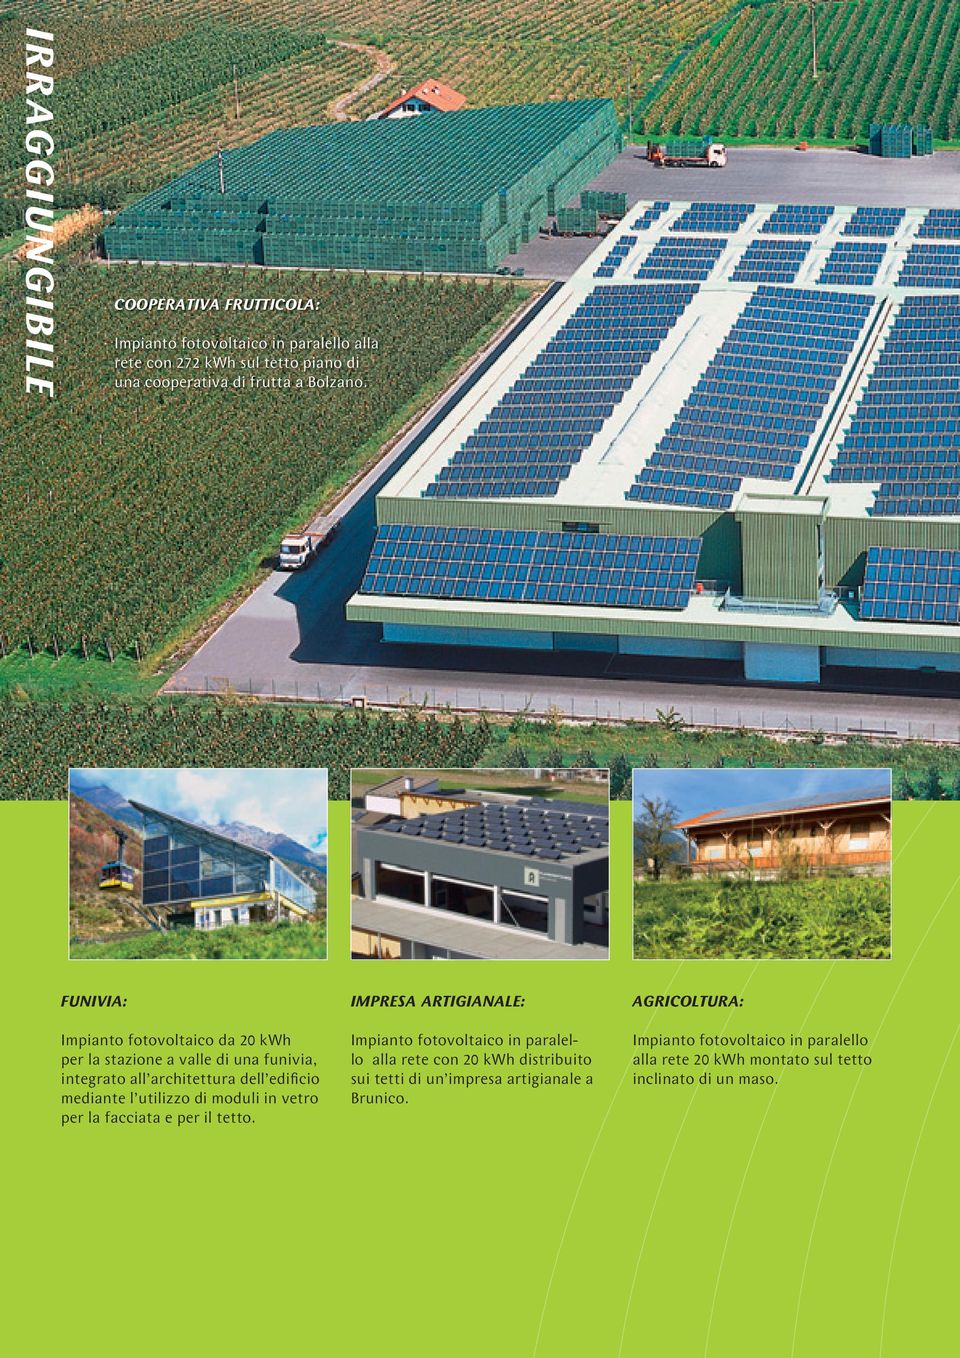 FUNIVIA: Impianto fotovoltaico da 20 kwh per la stazione a valle di una funivia, integrato all architettura dell edificio mediante l utilizzo di